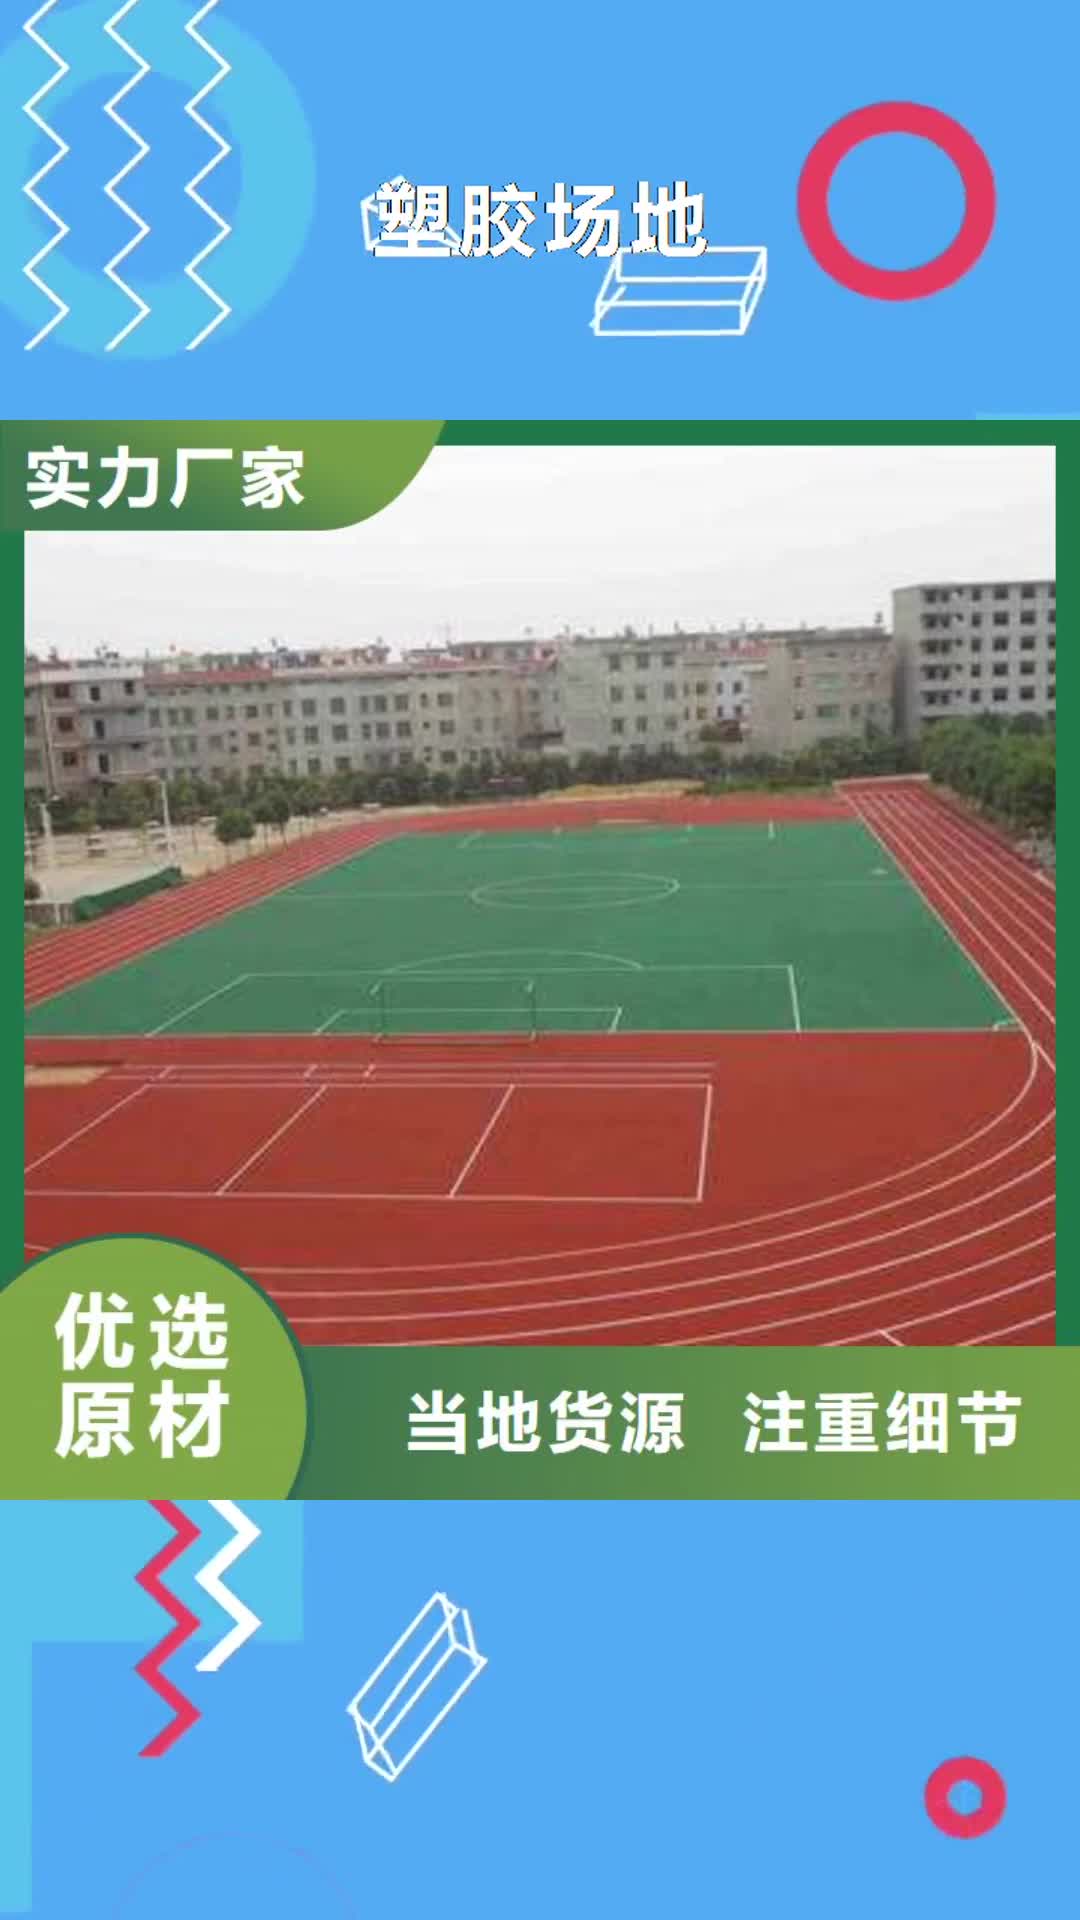 淮南【塑胶场地】-pu球场地面塑胶跑道品牌企业